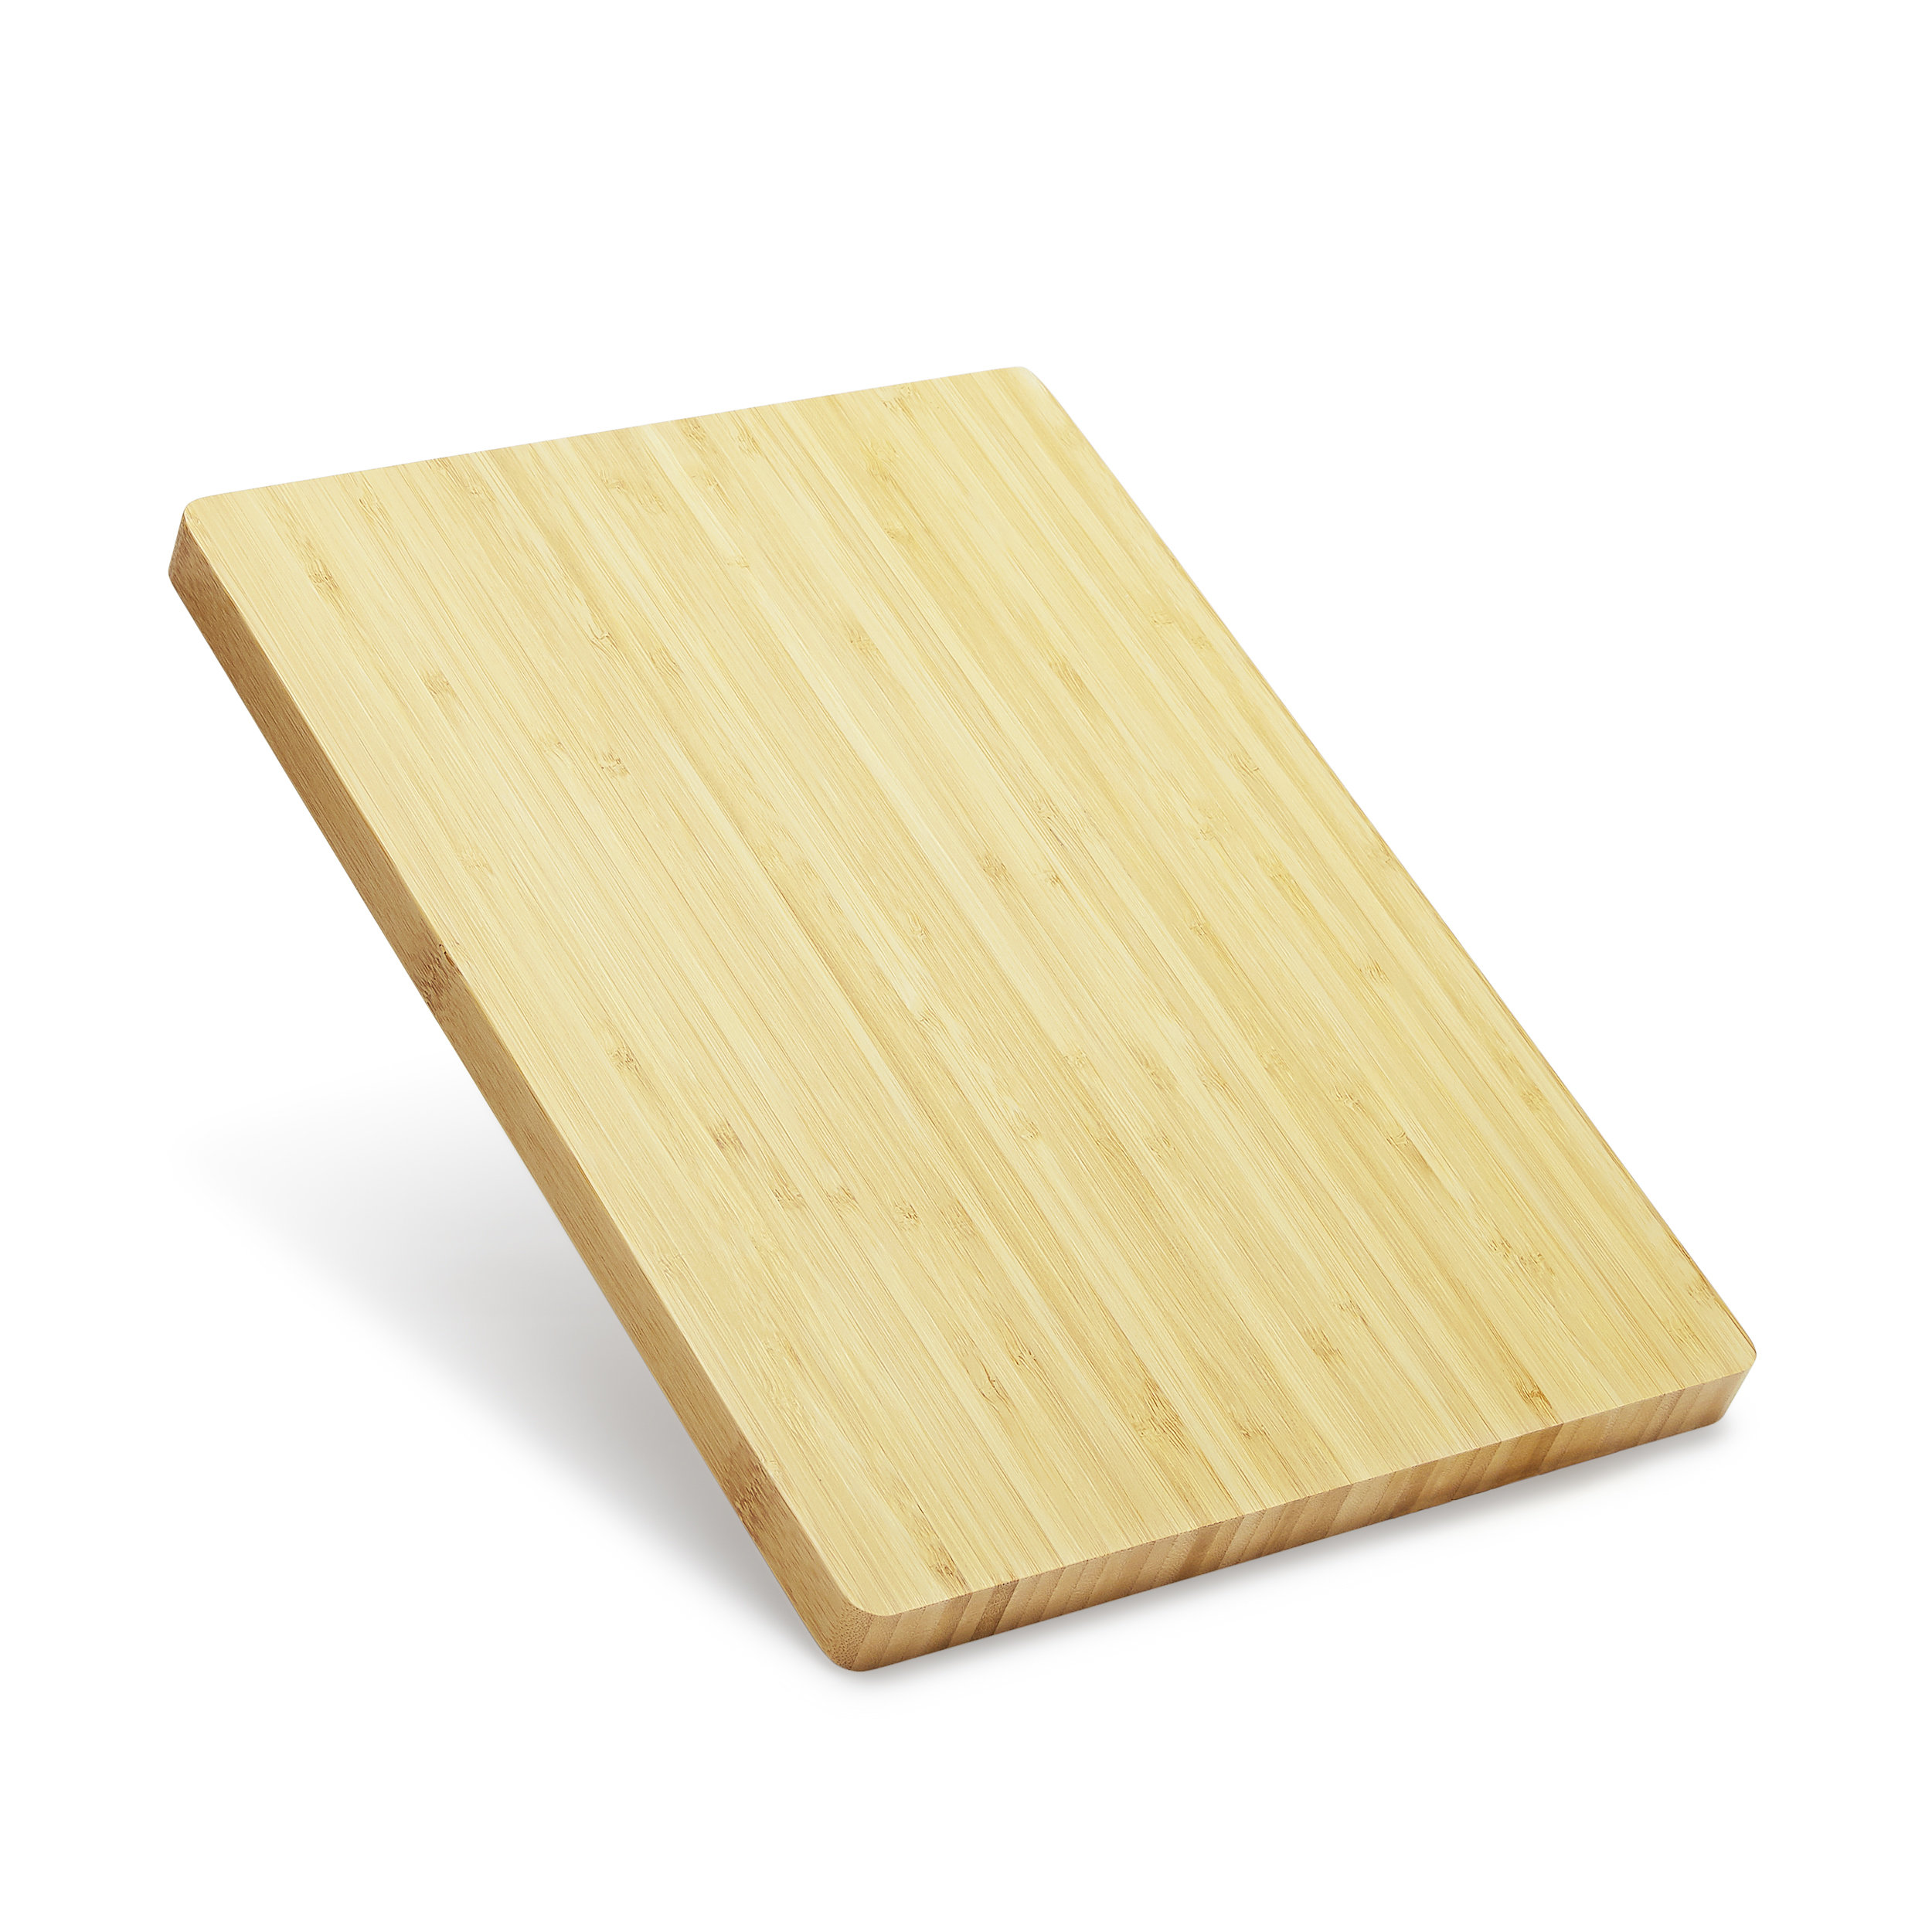 https://assets.wfcdn.com/im/87200618/compr-r85/2160/216076053/makerflo-bamboo-cutting-boards-14-x-10-wooden-kitchen-butcher-block-handmade-gifts.jpg